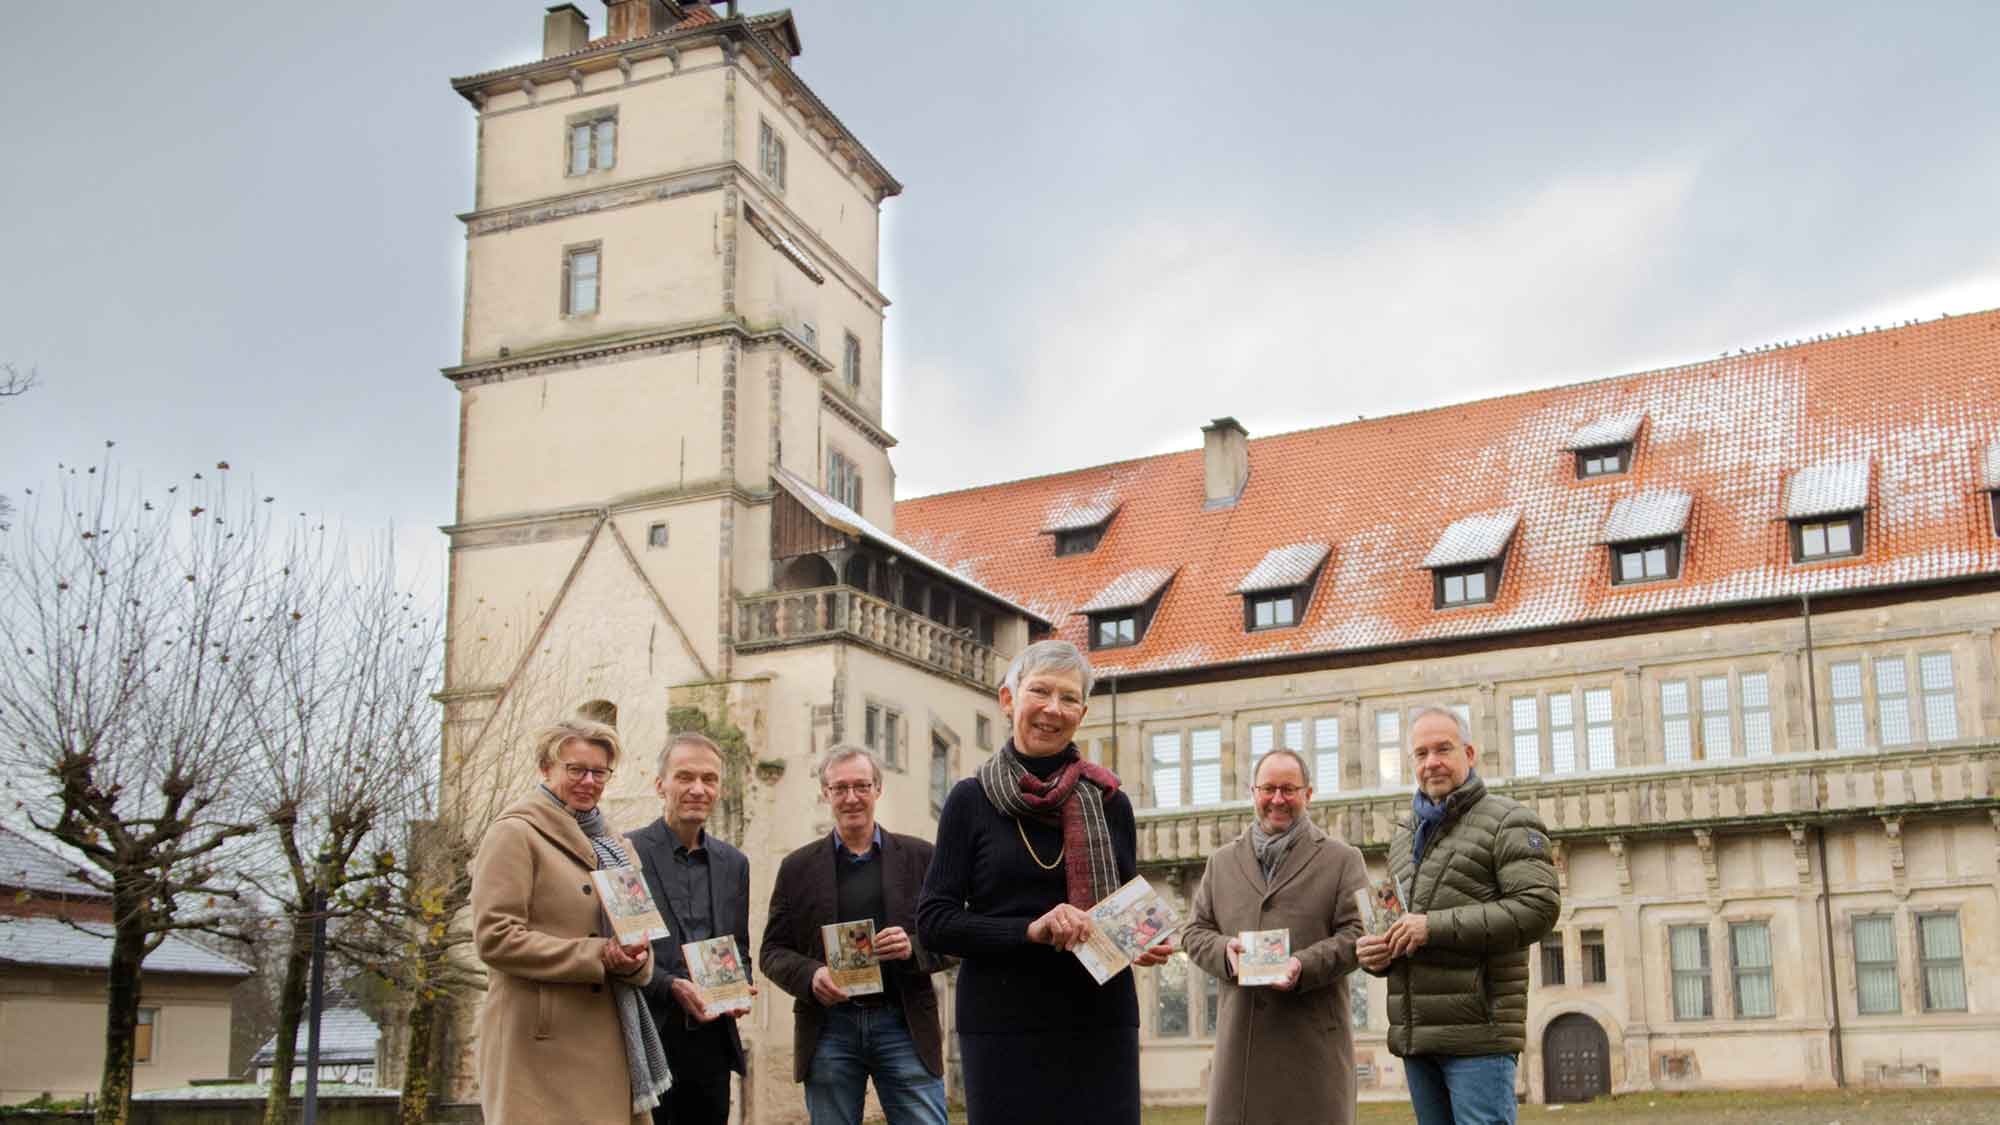 Weserrenaissance Museum Schloss Brake, Lemgo: neue Publikation – »&8232;Der Stoff, aus dem die Schlösser sind – Baustoffhandel um 1600«